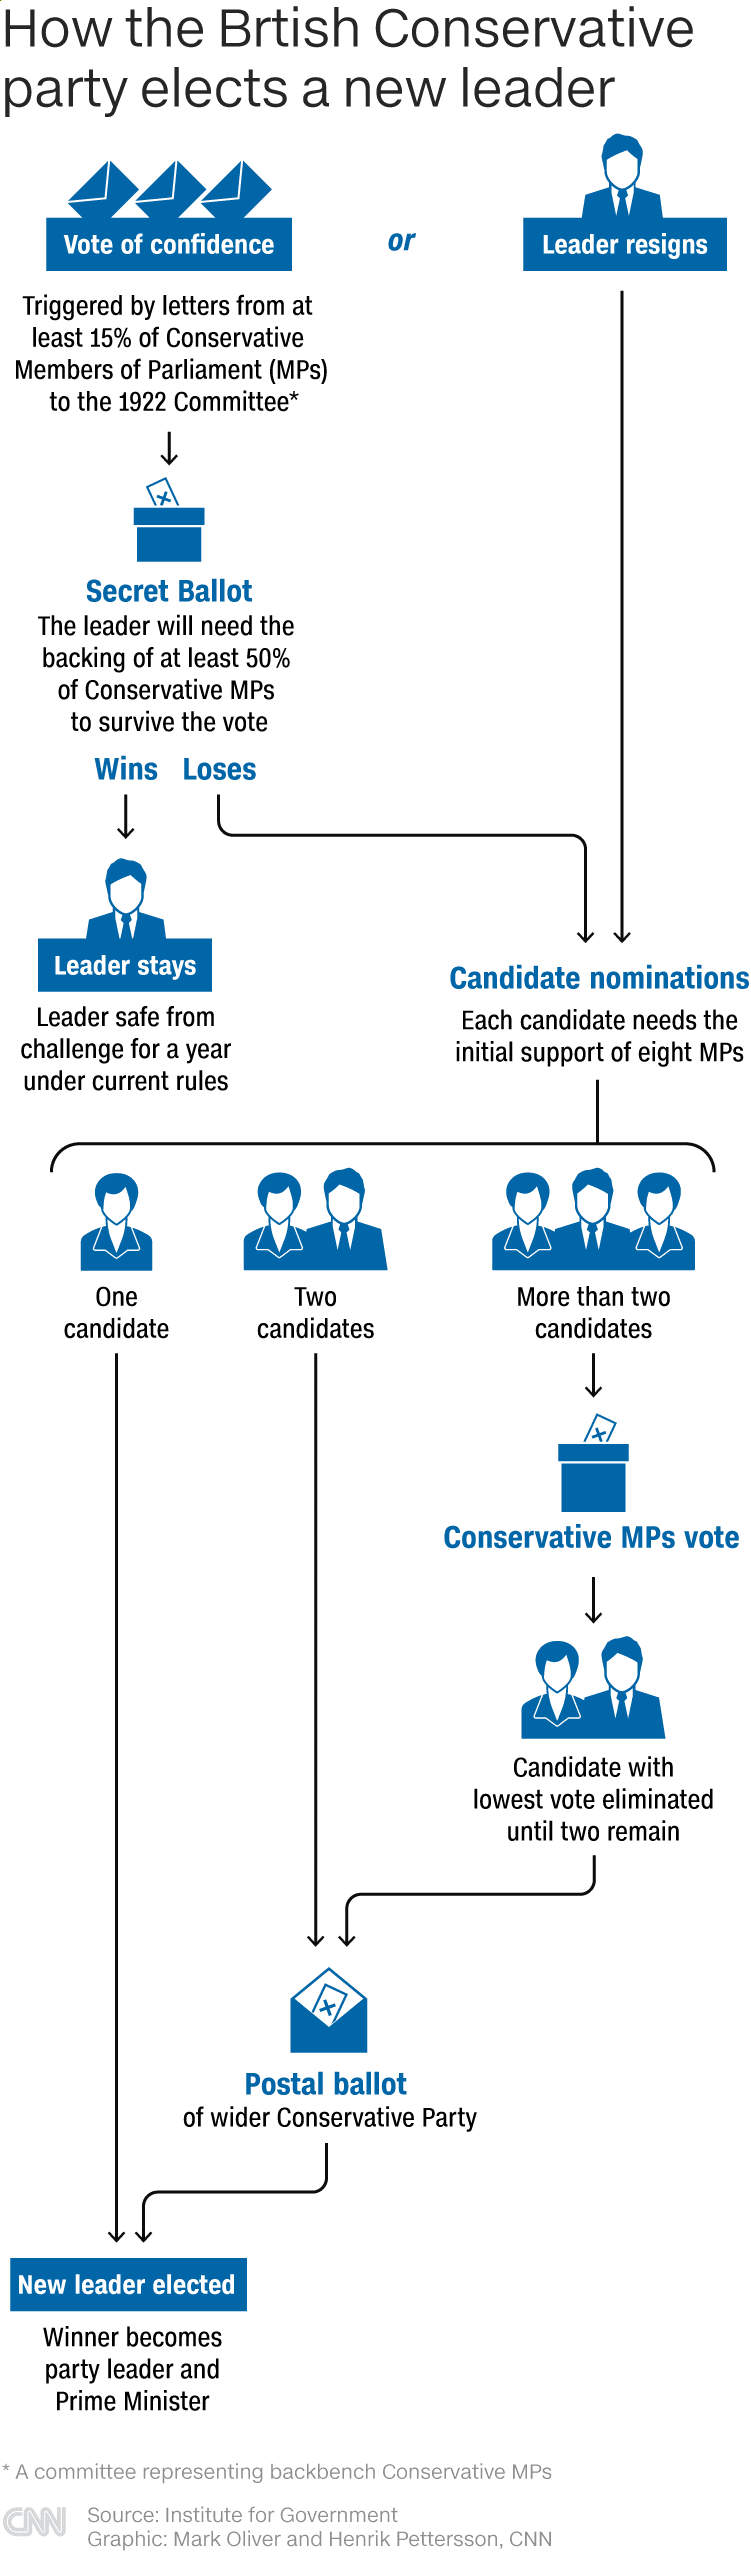 Jak brytyjska Partia Konserwatywna wybiera nowego przywódcę